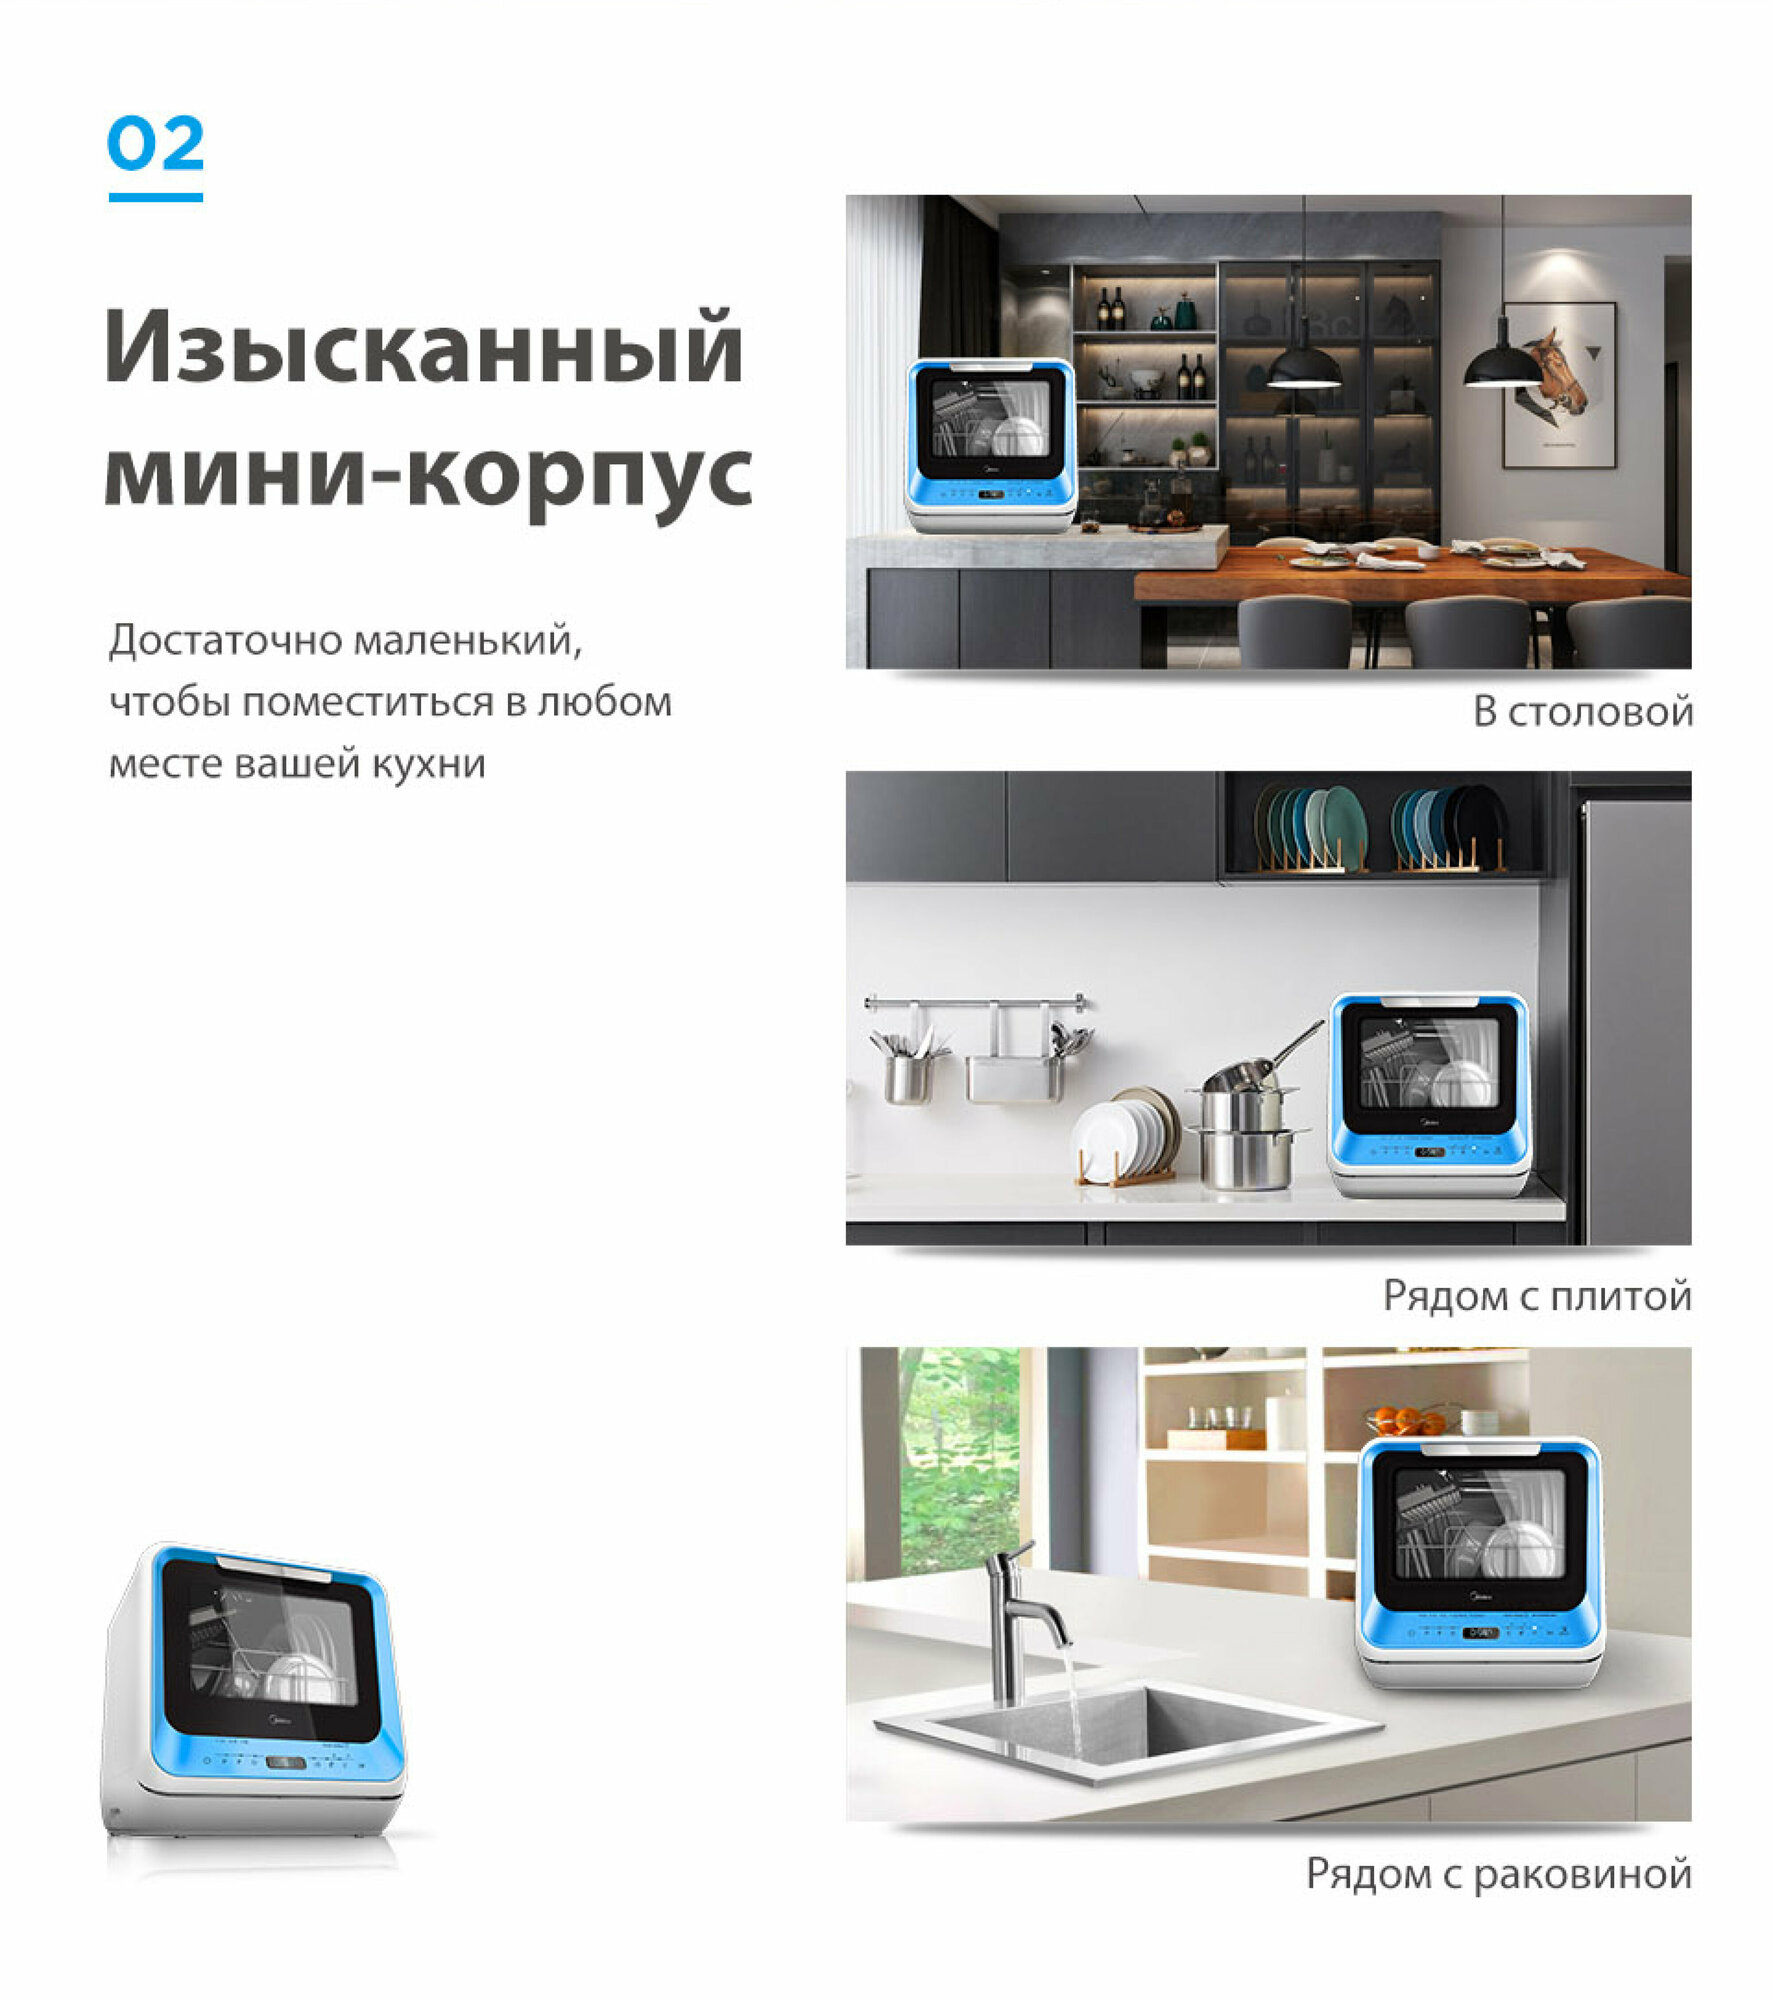 Компактная посудомоечная машина Midea MCFD42900BLMINI-i / MCFD42900GMINI-i / MCFD42900ORMINI-i